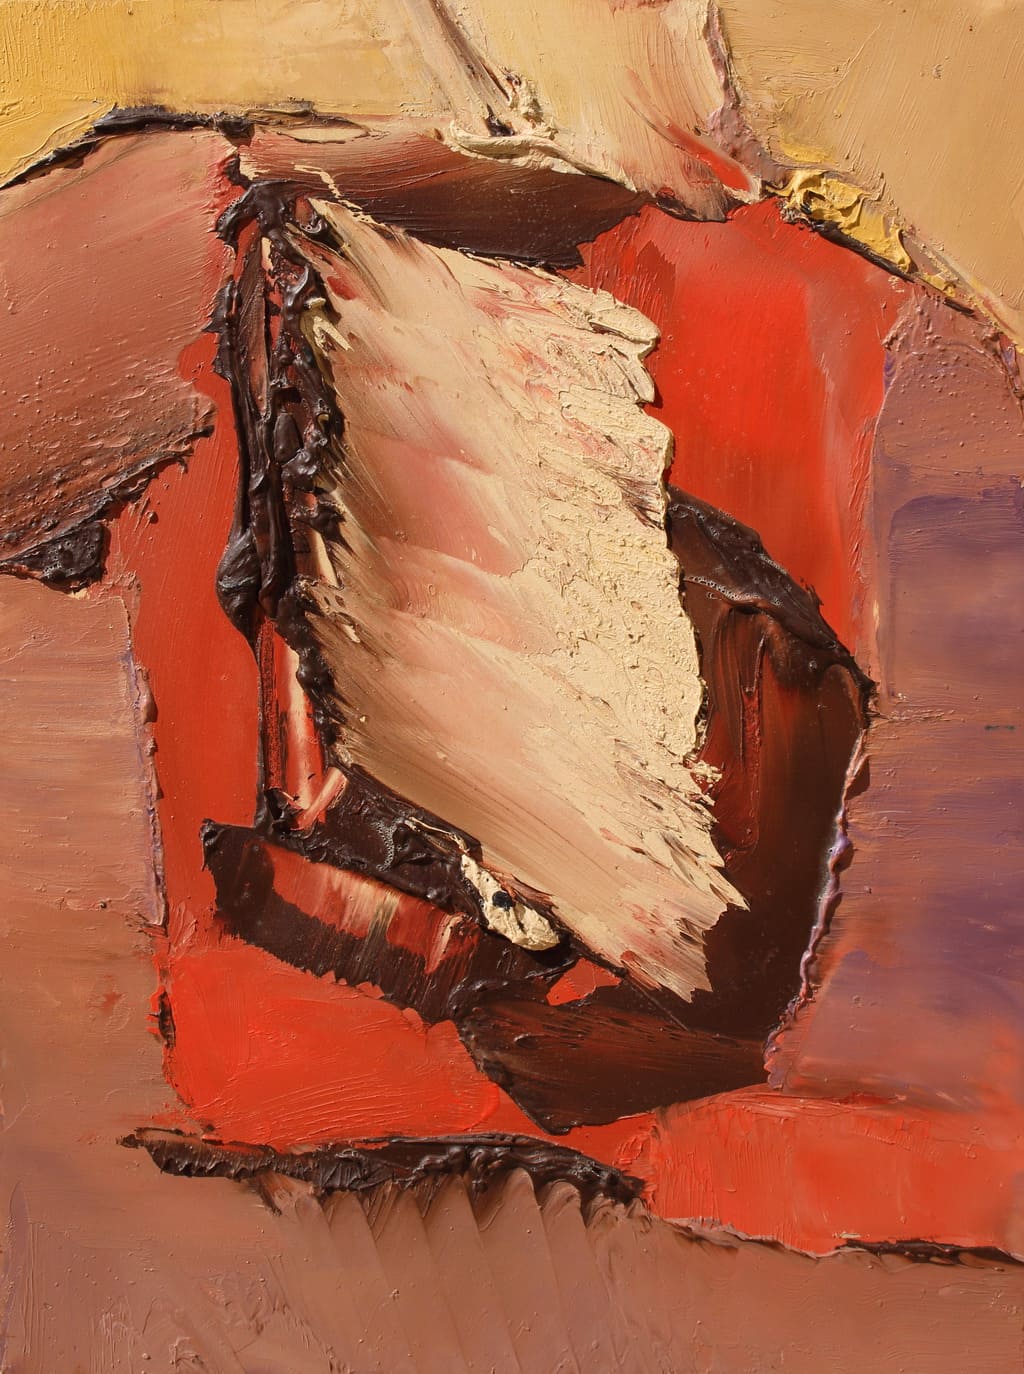 Erminio Tansini, “Senza titolo”, 1996, olio su tavola, 40x30 cm. © Erminio Tansini